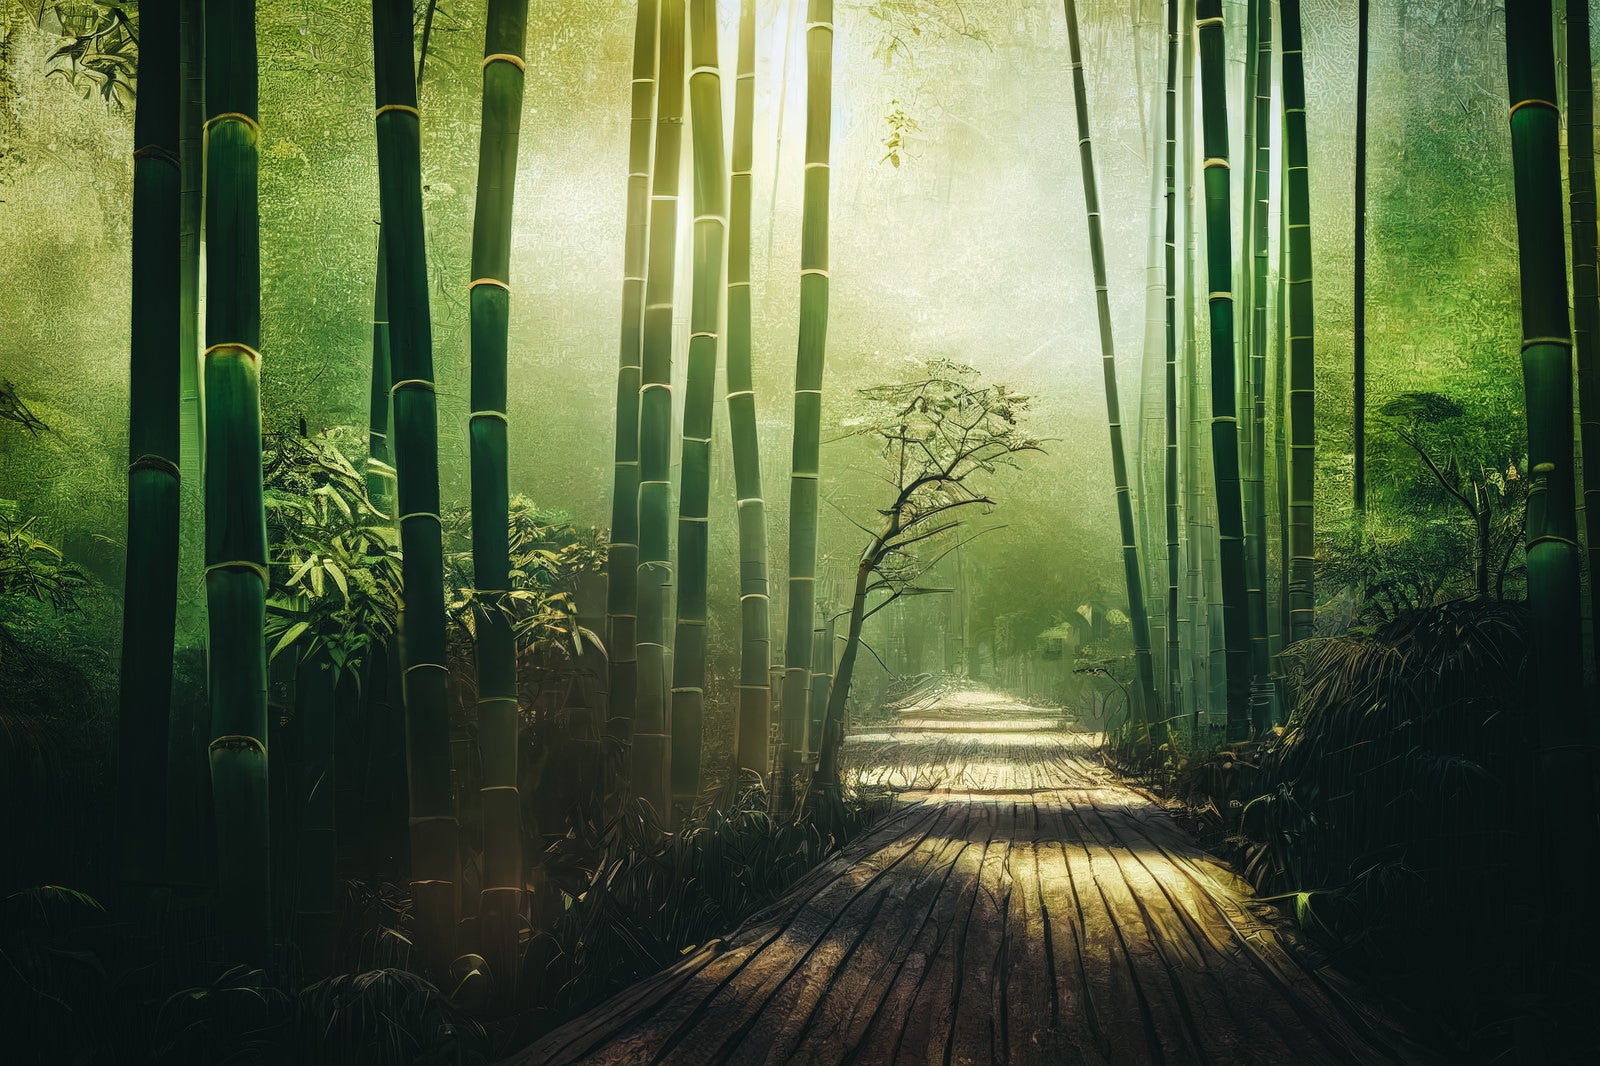 「竹林に誘う木道」の写真